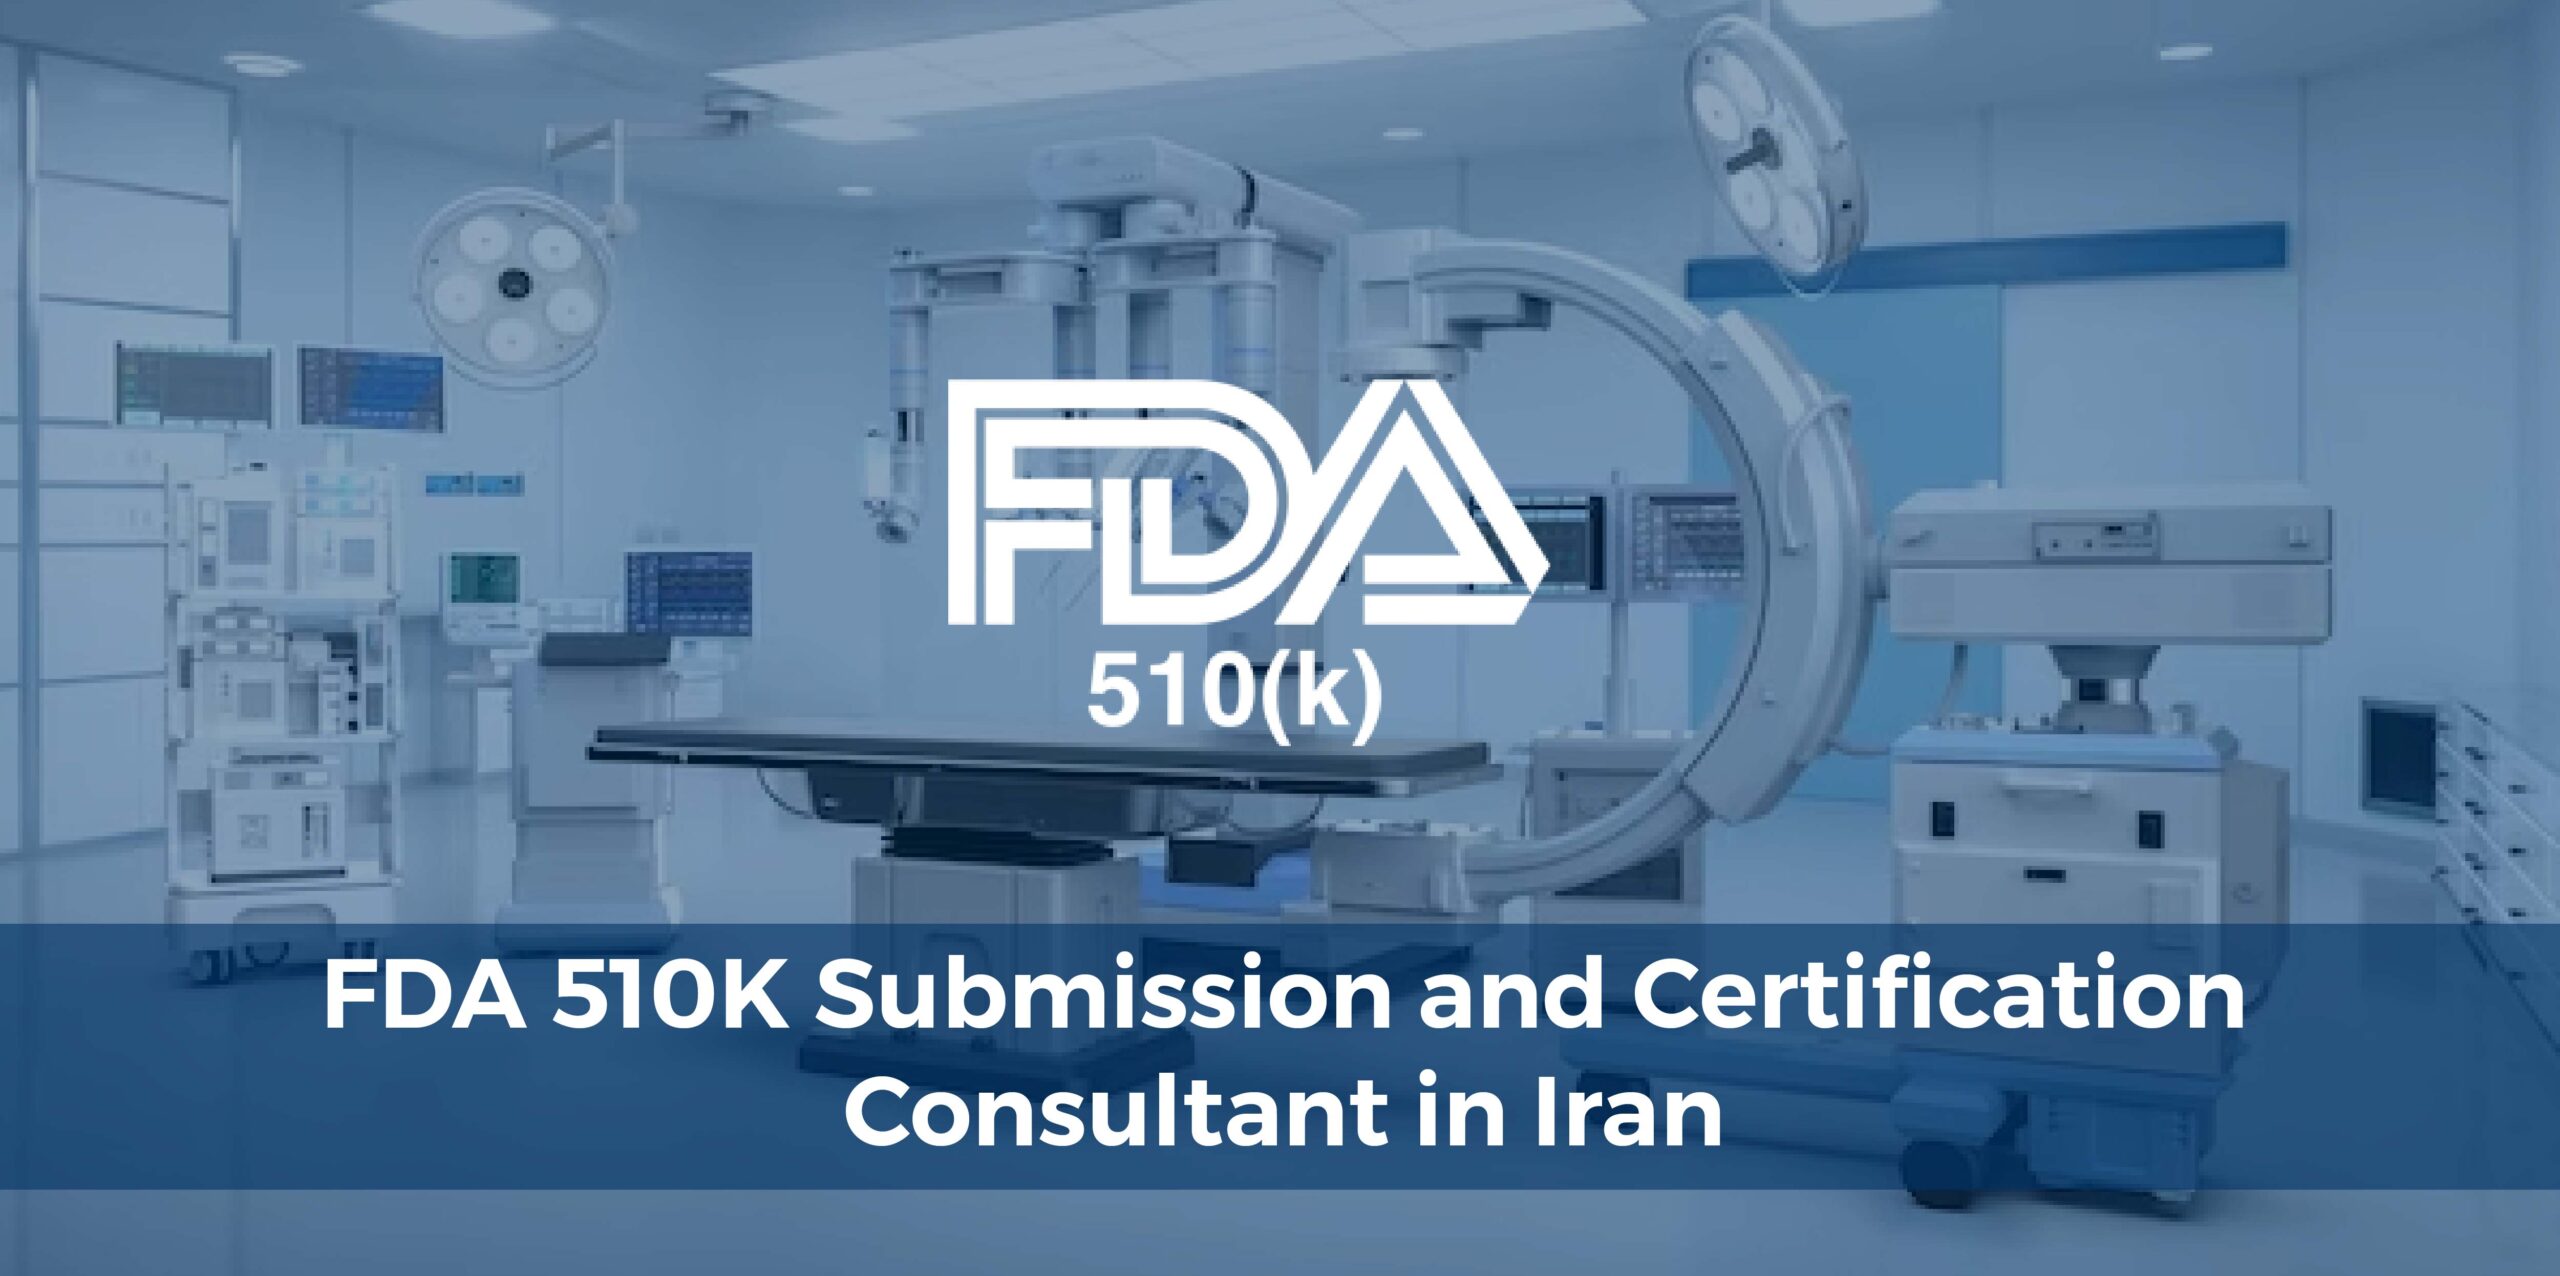 US FDA 510(k) regulatory consultant